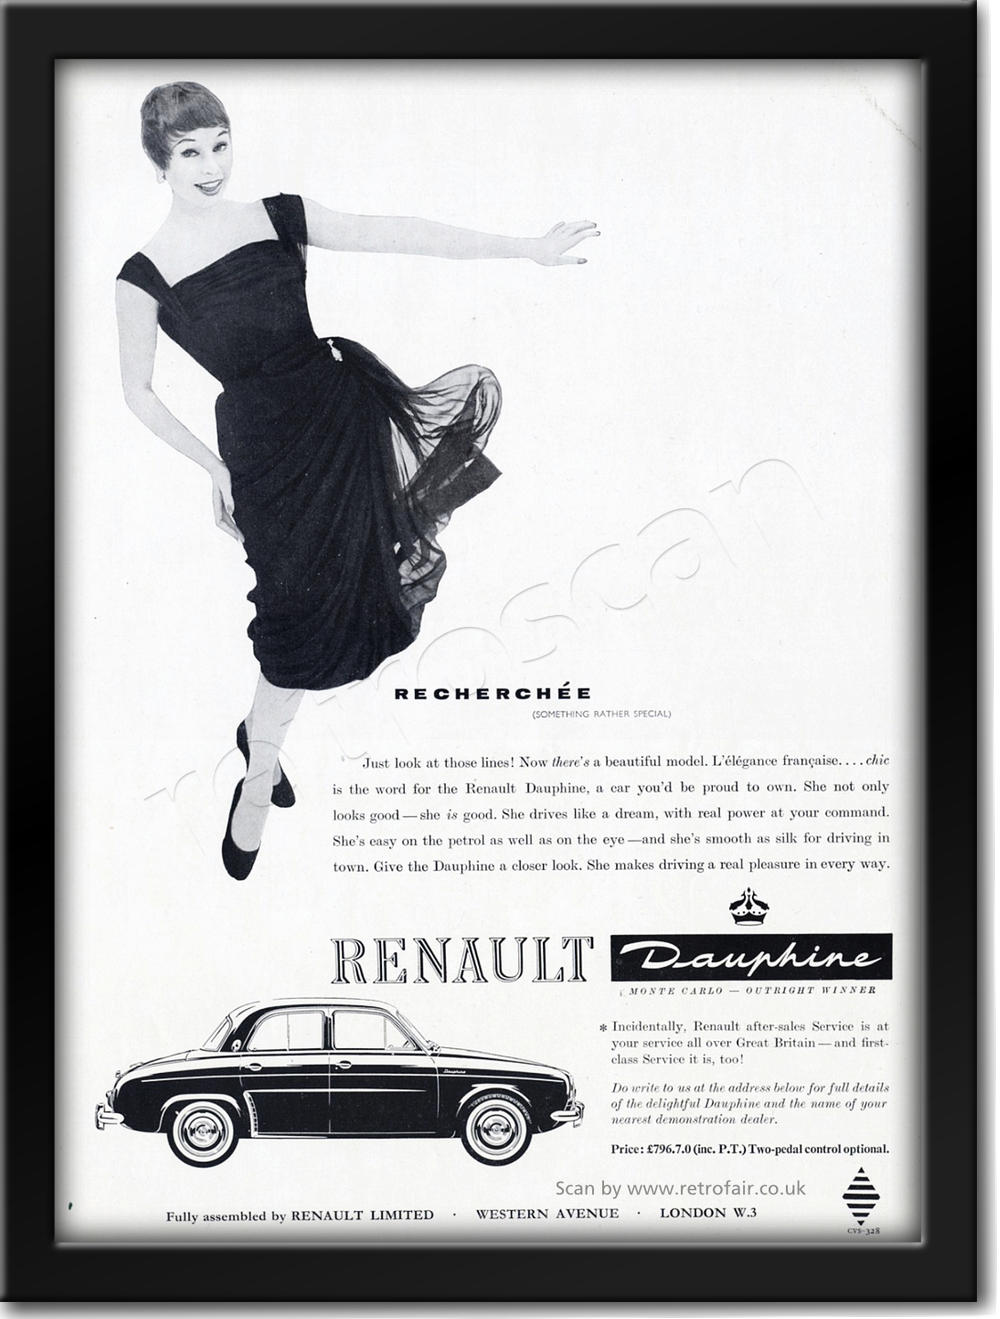 1958 vintage Renault Dauphine advert